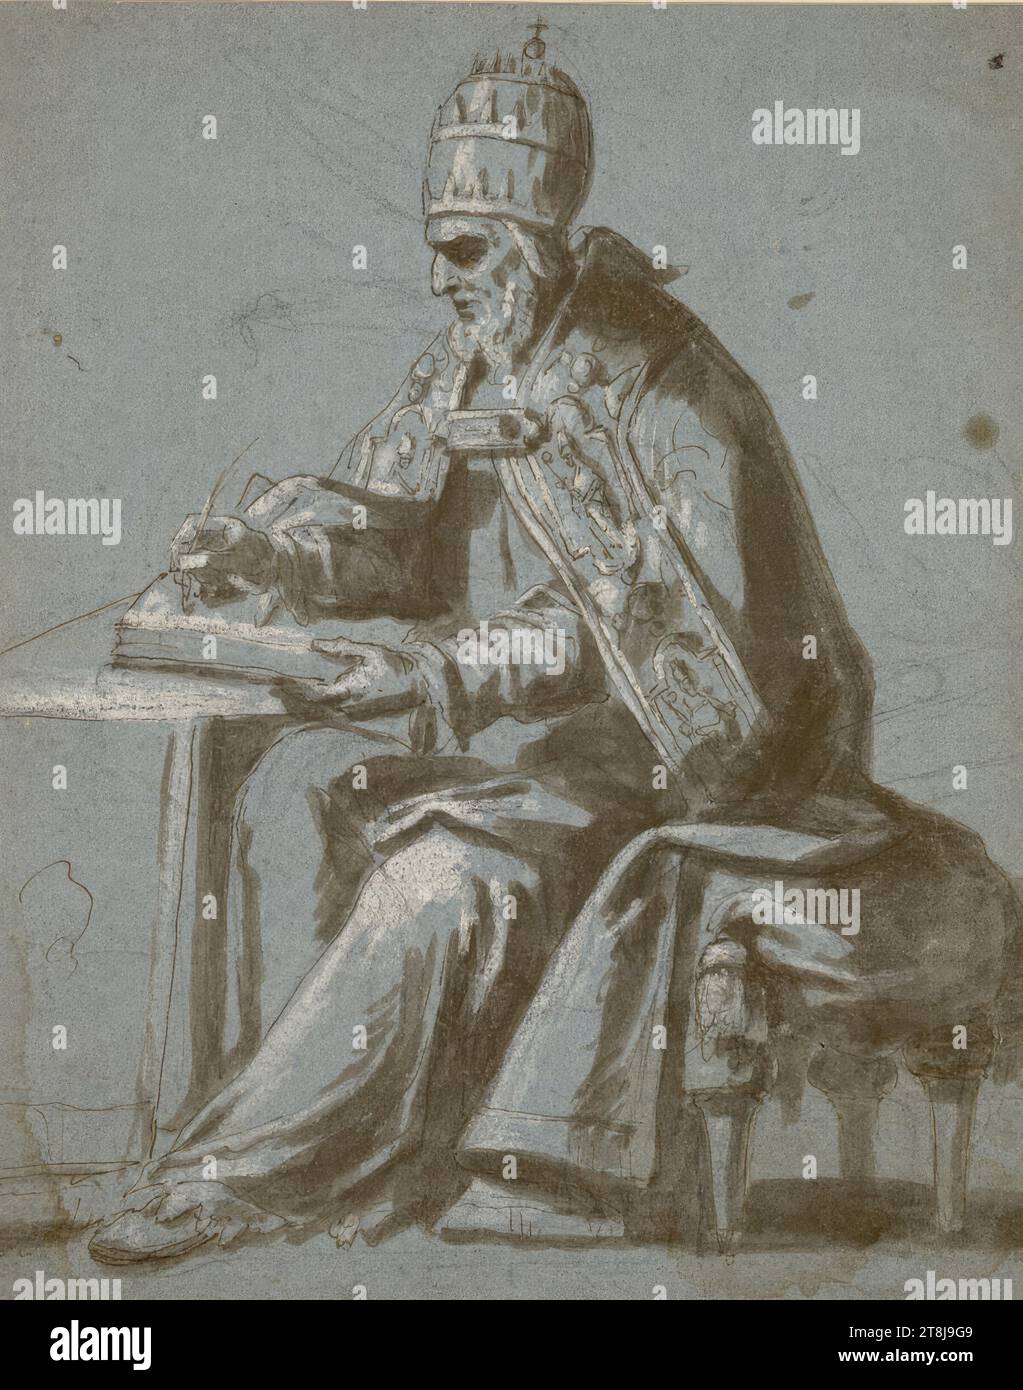 Studium für einen Kirchenvater, Papst Gregor dem Großen, der links sitzt und schreibt, anonym, zeichnet, Kreide; Feder; geheftet; mit deckendem weiß erhöht; blaues Papier; Wasserränder, 39,1 x 31,1 cm Stockfoto